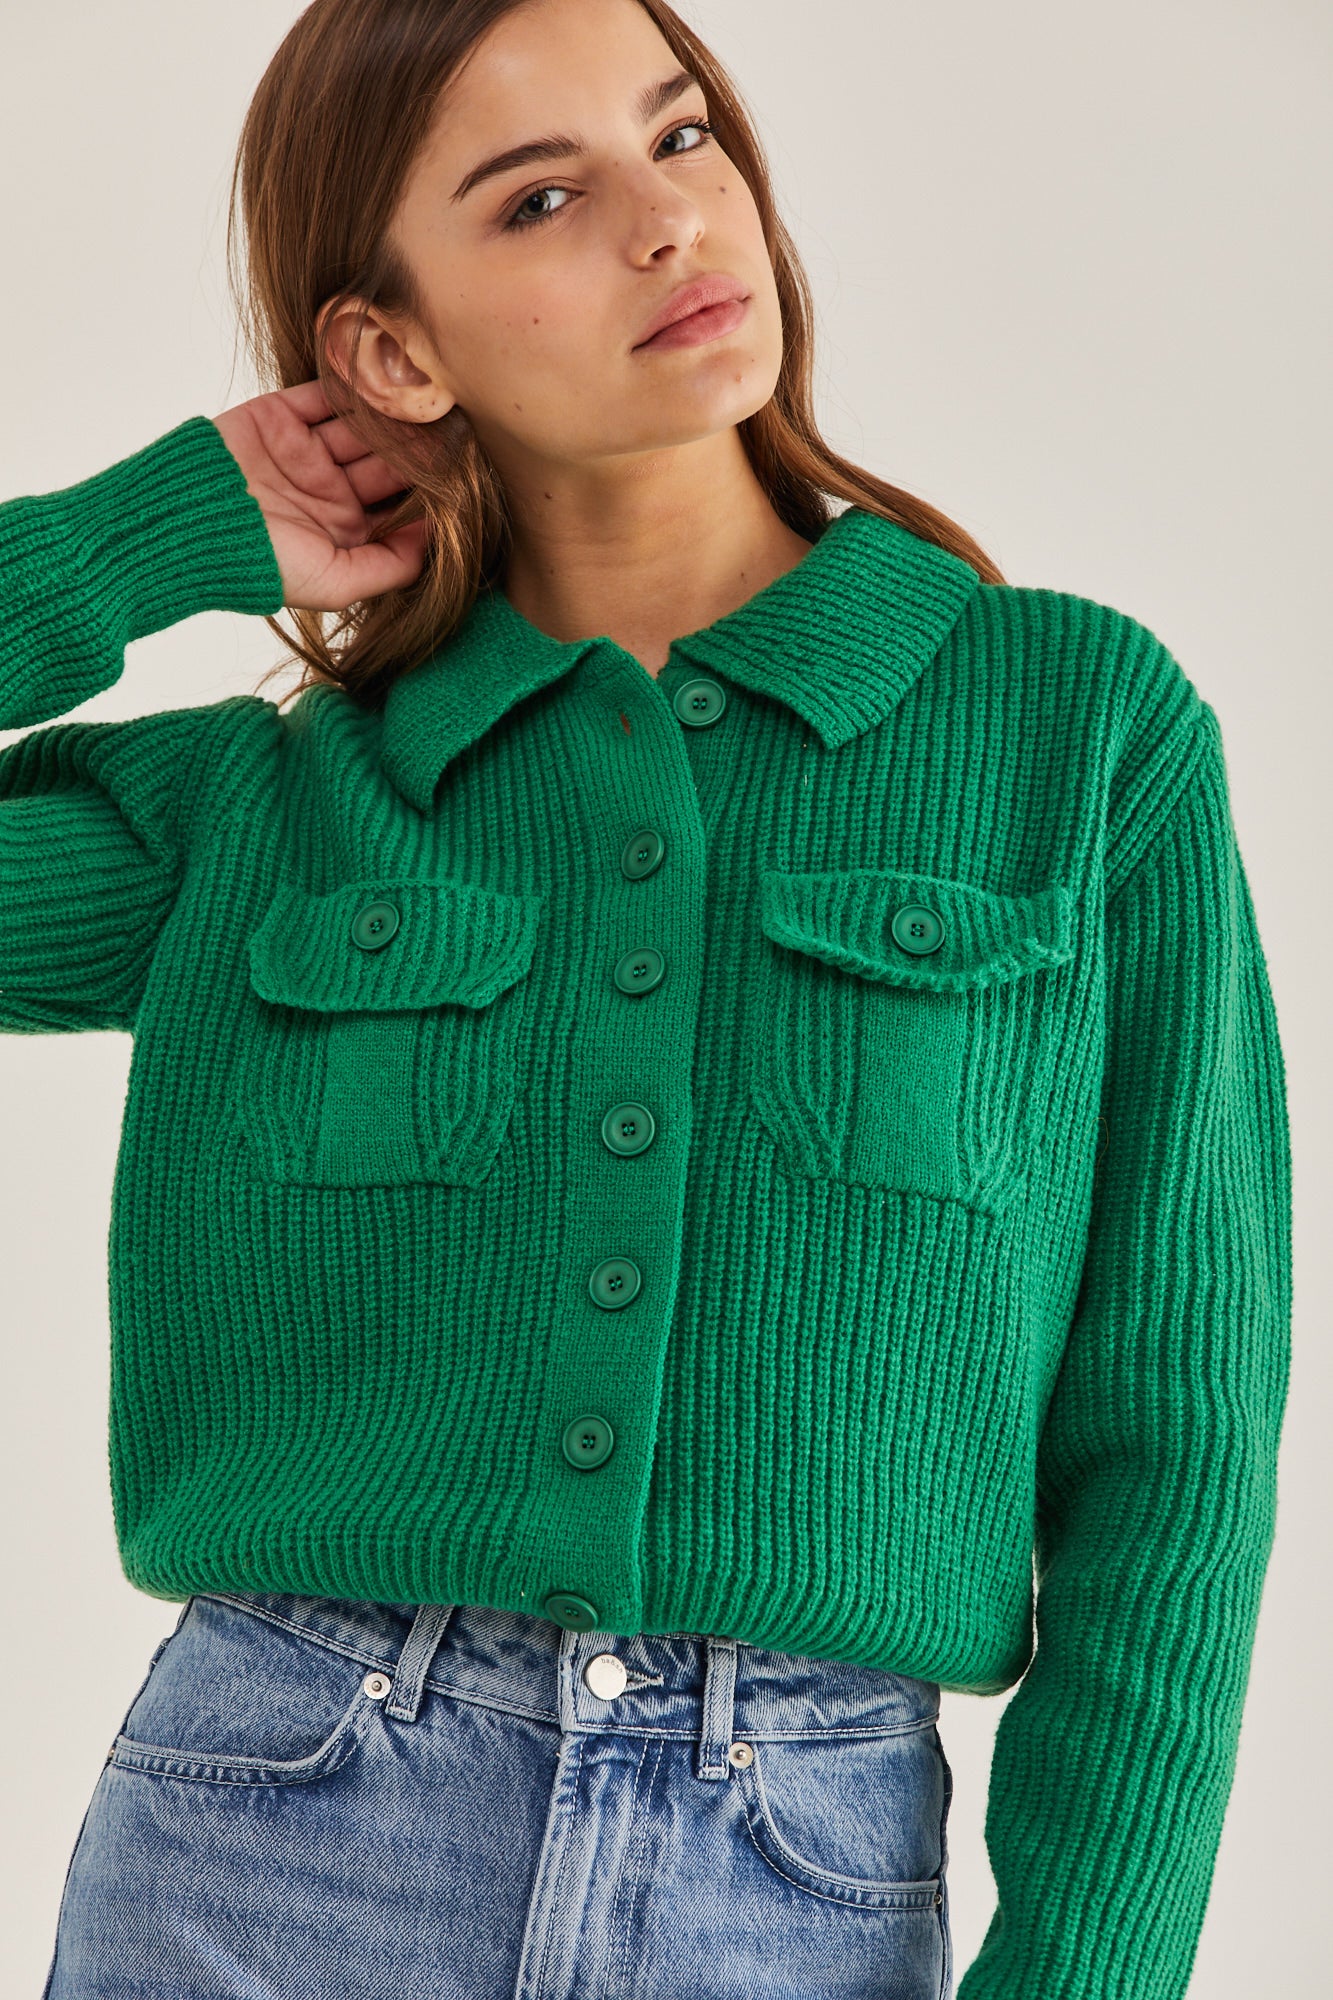 Gili Sweater green